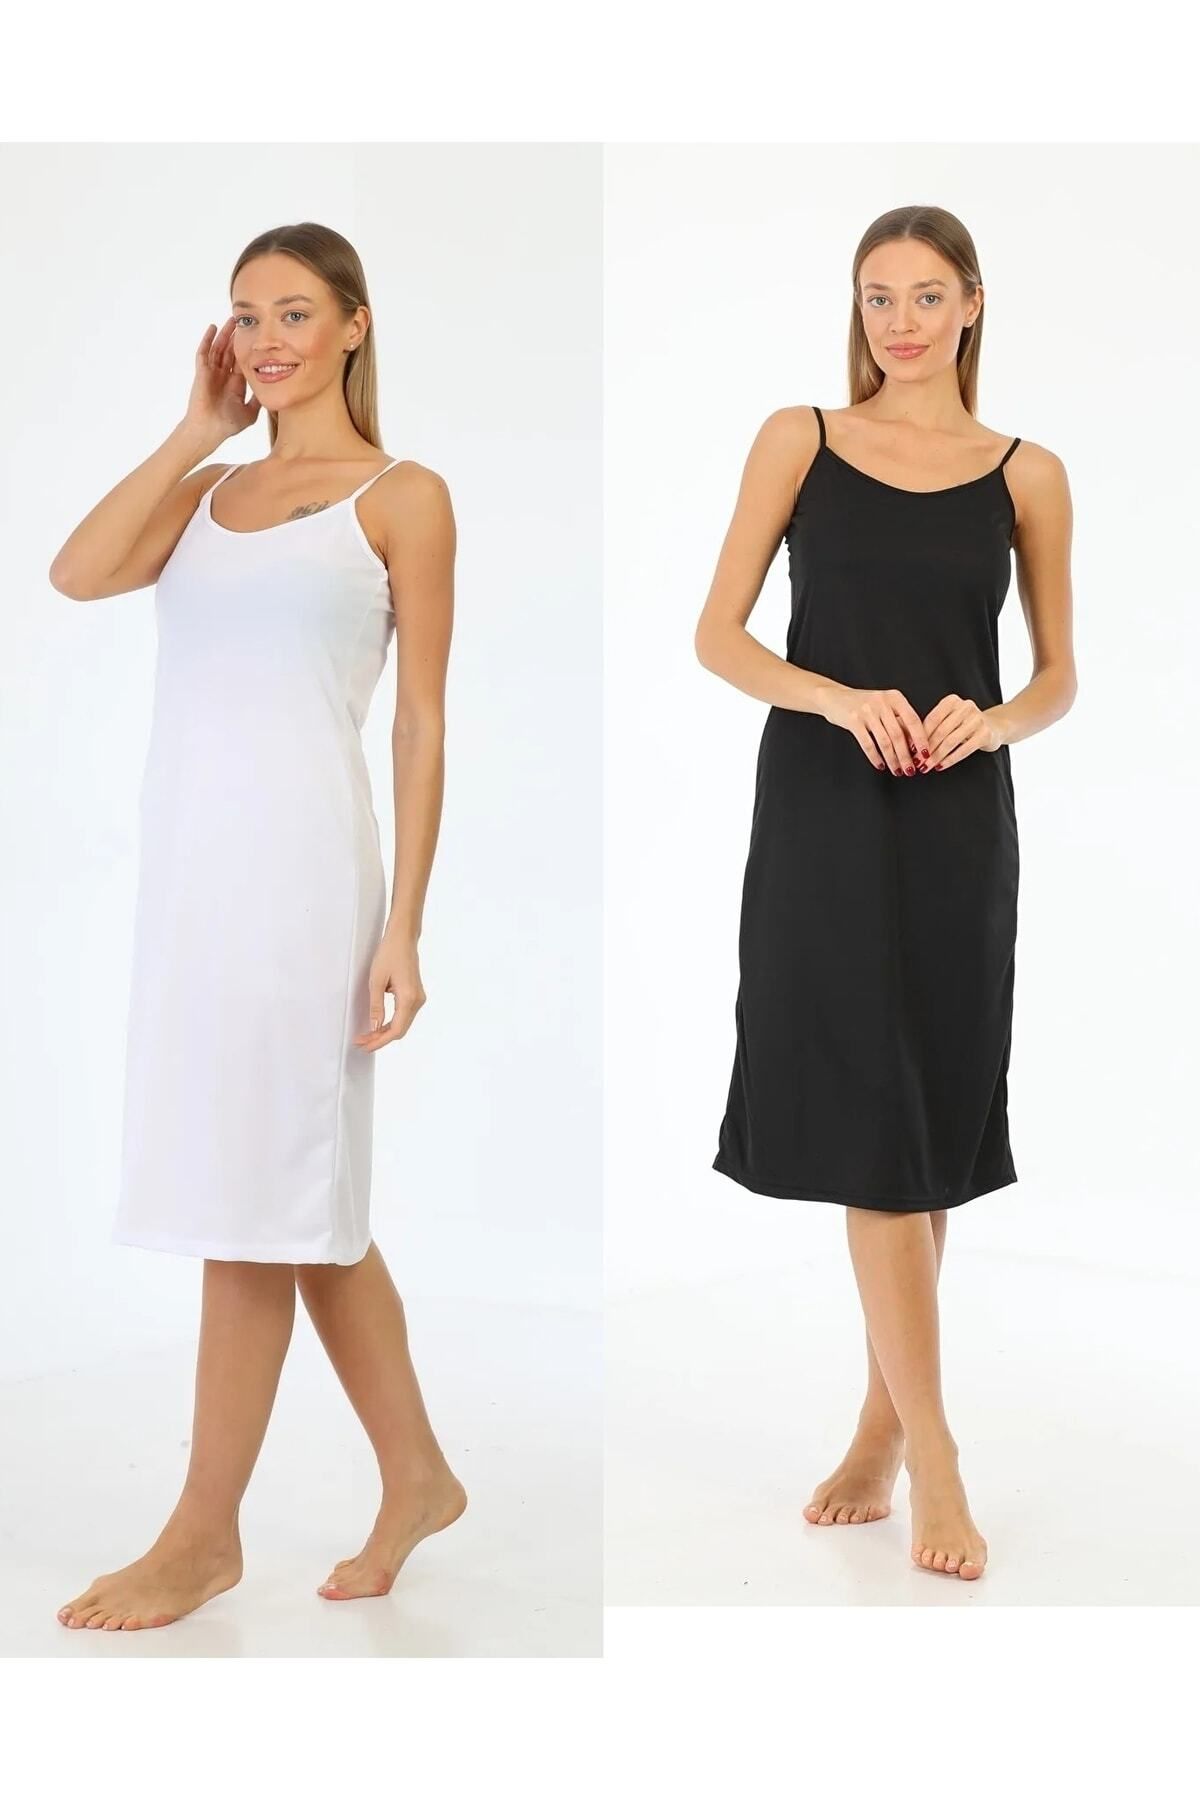 medipek Ipaskılı Elbise Astarı Içlik Jupon Siyah Beyaz 2li Set